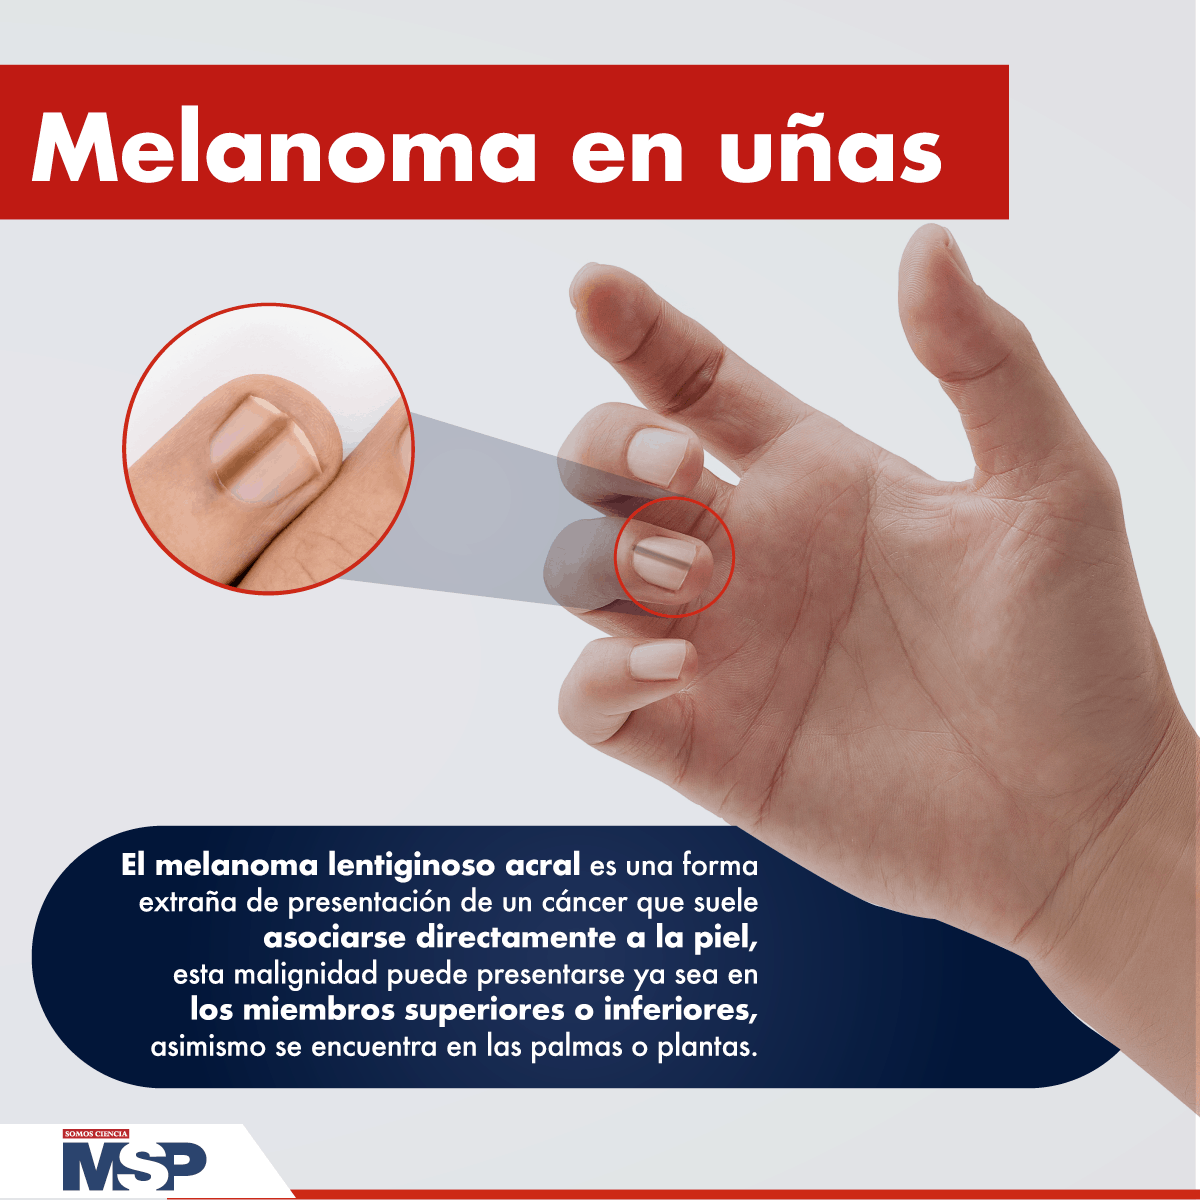 Manicurista descubre melanoma en la uña de una clienta  Sociedad  W Radio  Mexico